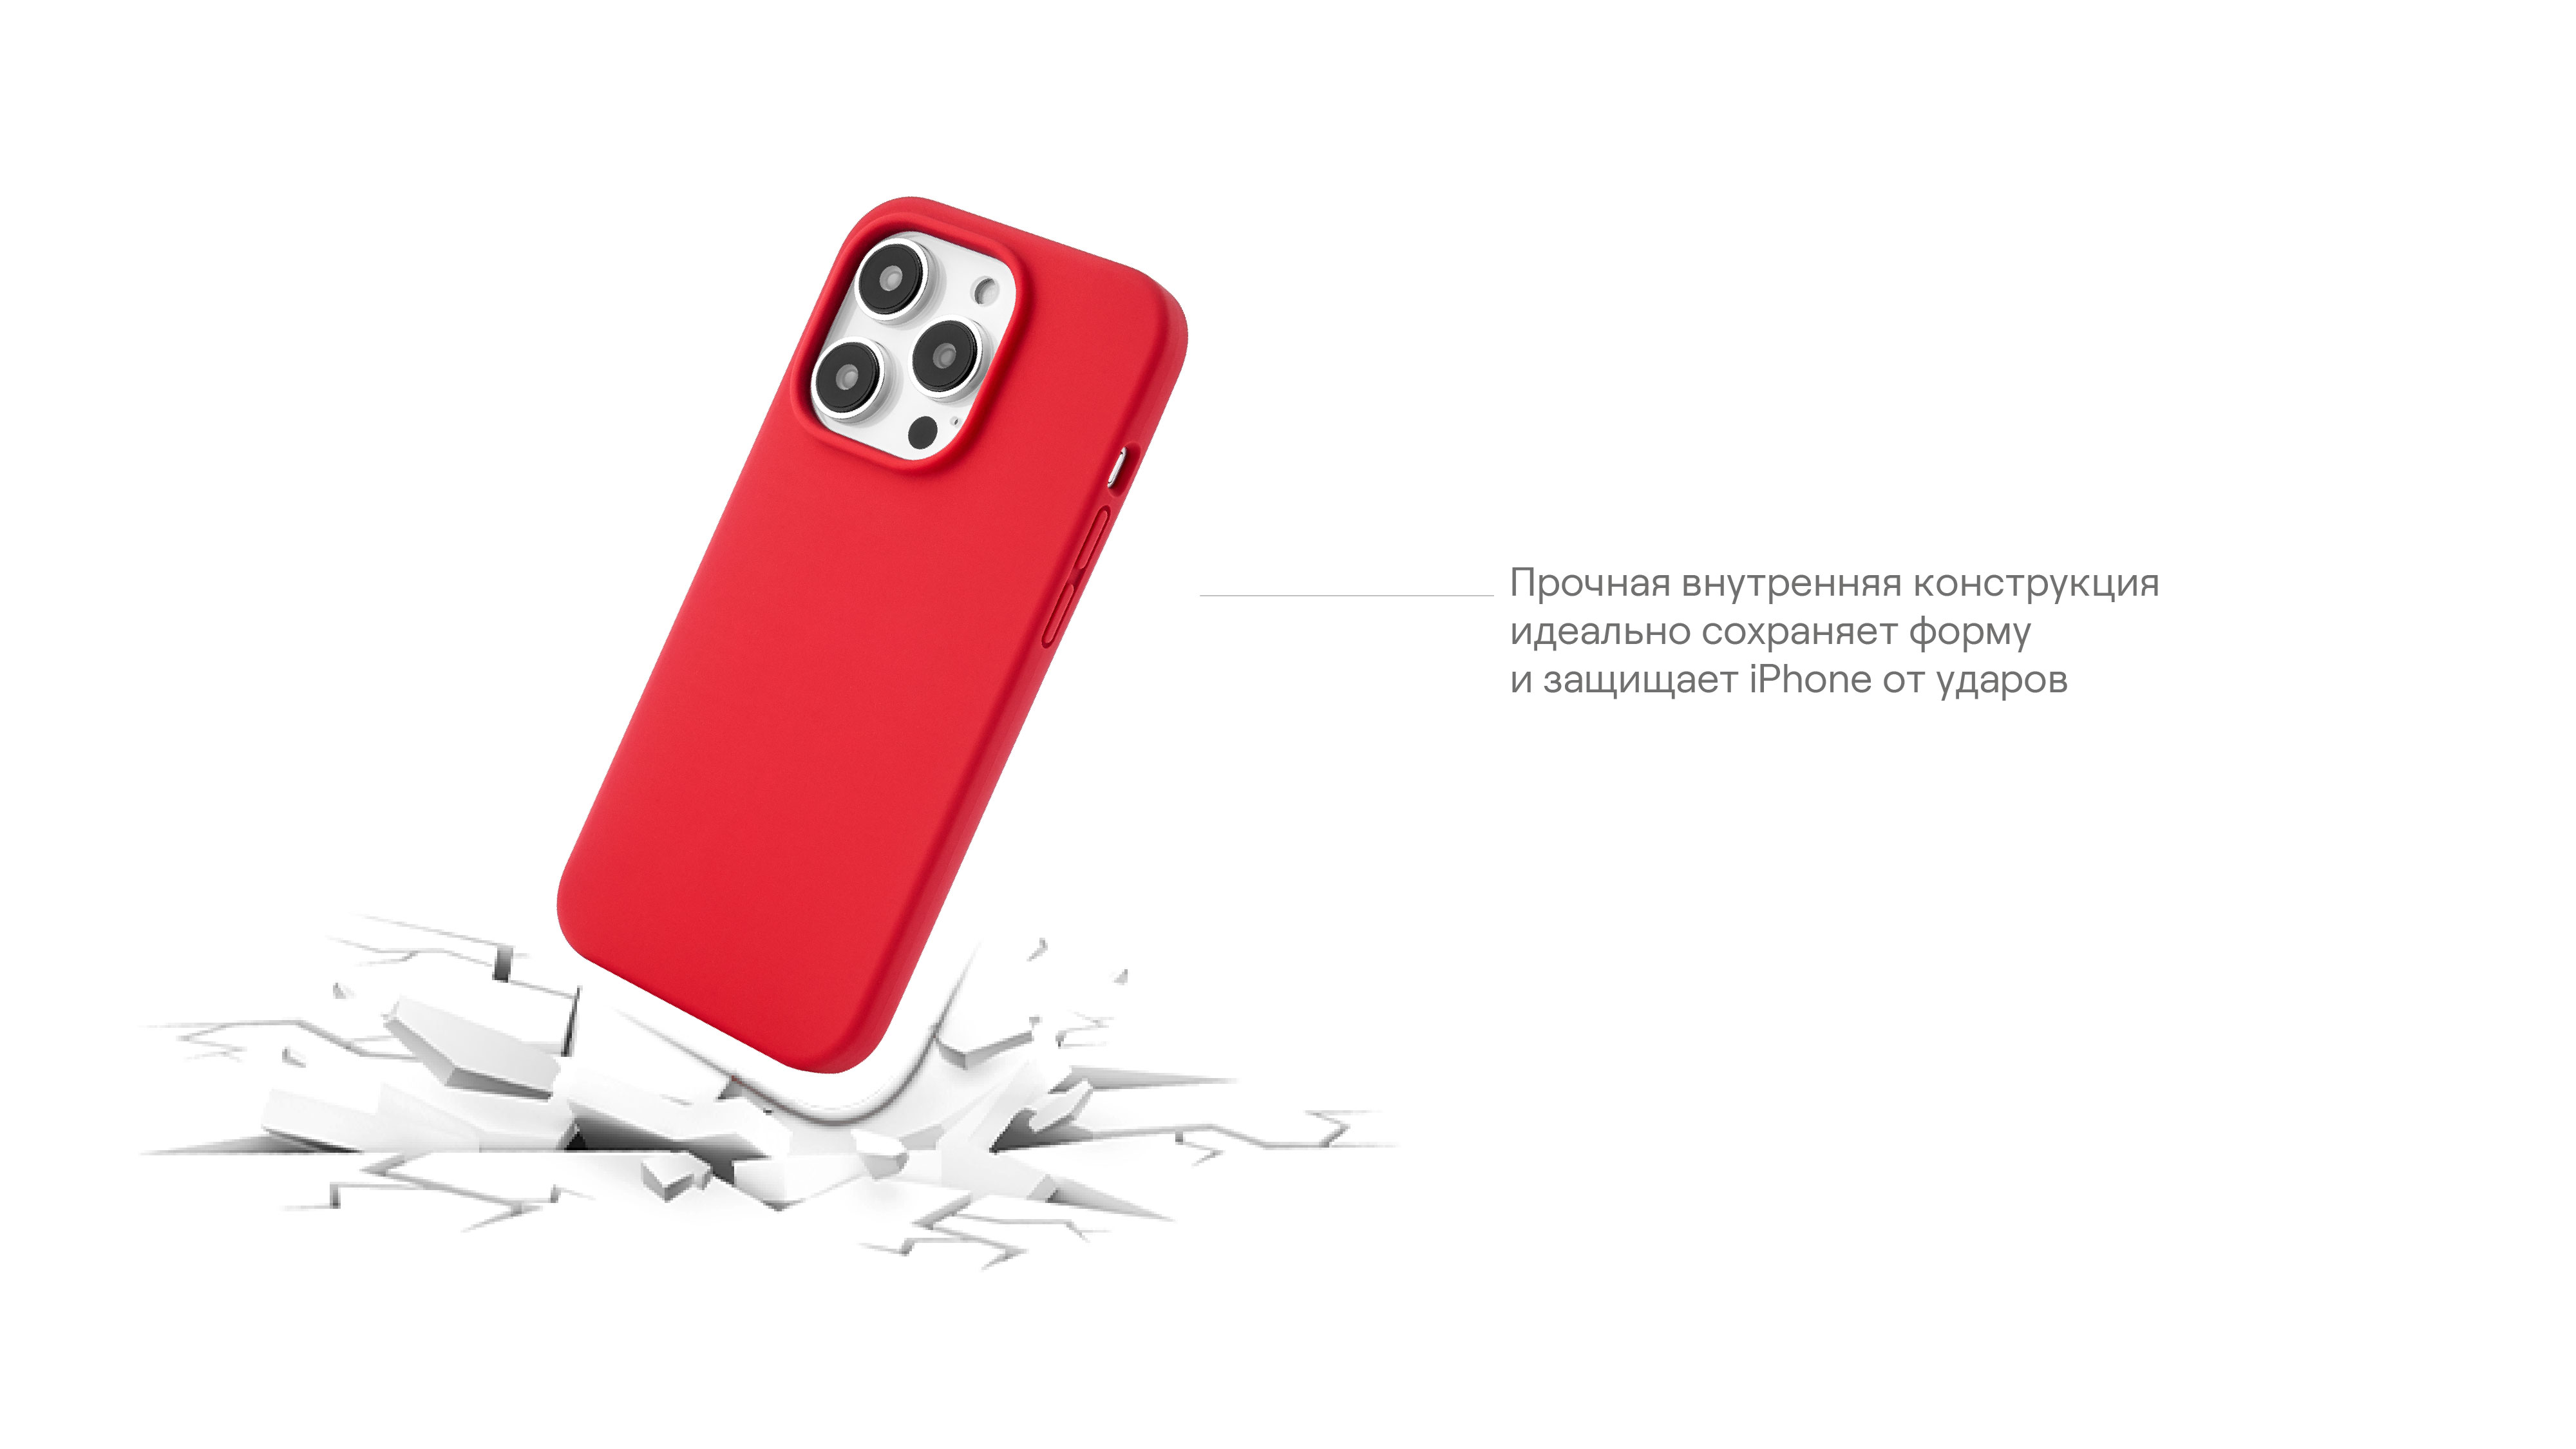 Чехол защитный uBear Touch Mag Case для  iPhone 14 Pro, MagSafe совместимый, силикон, софт-тач, красный